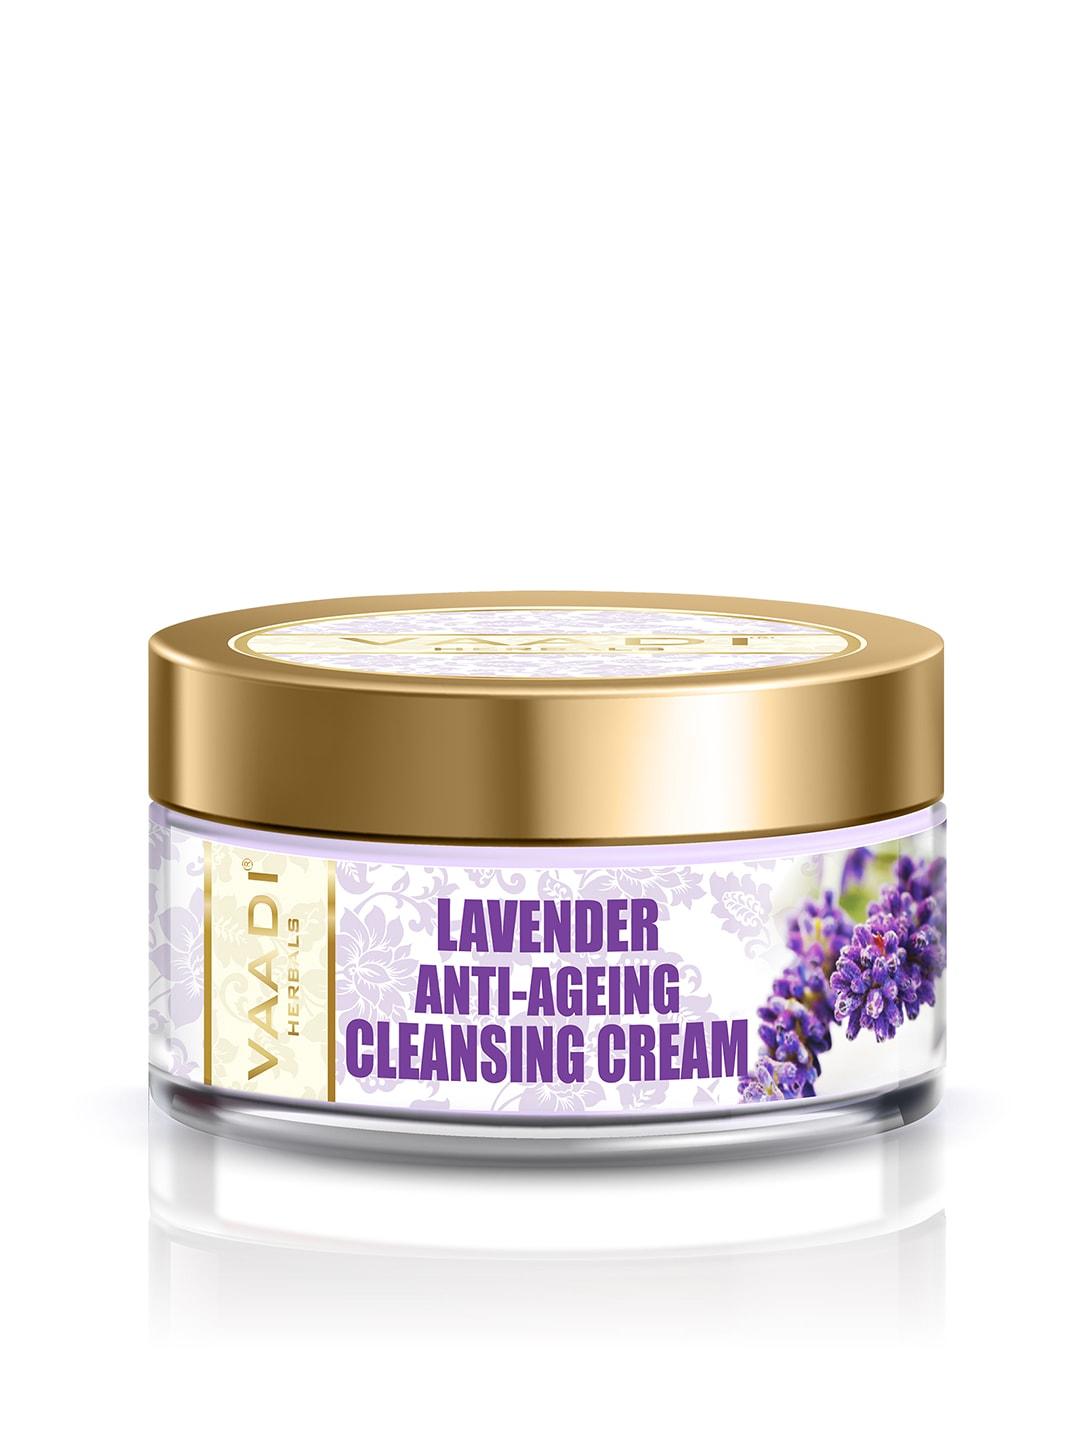 Vaadi Herbals Lavender Anti-Ageing Cleansing Cream - 50g